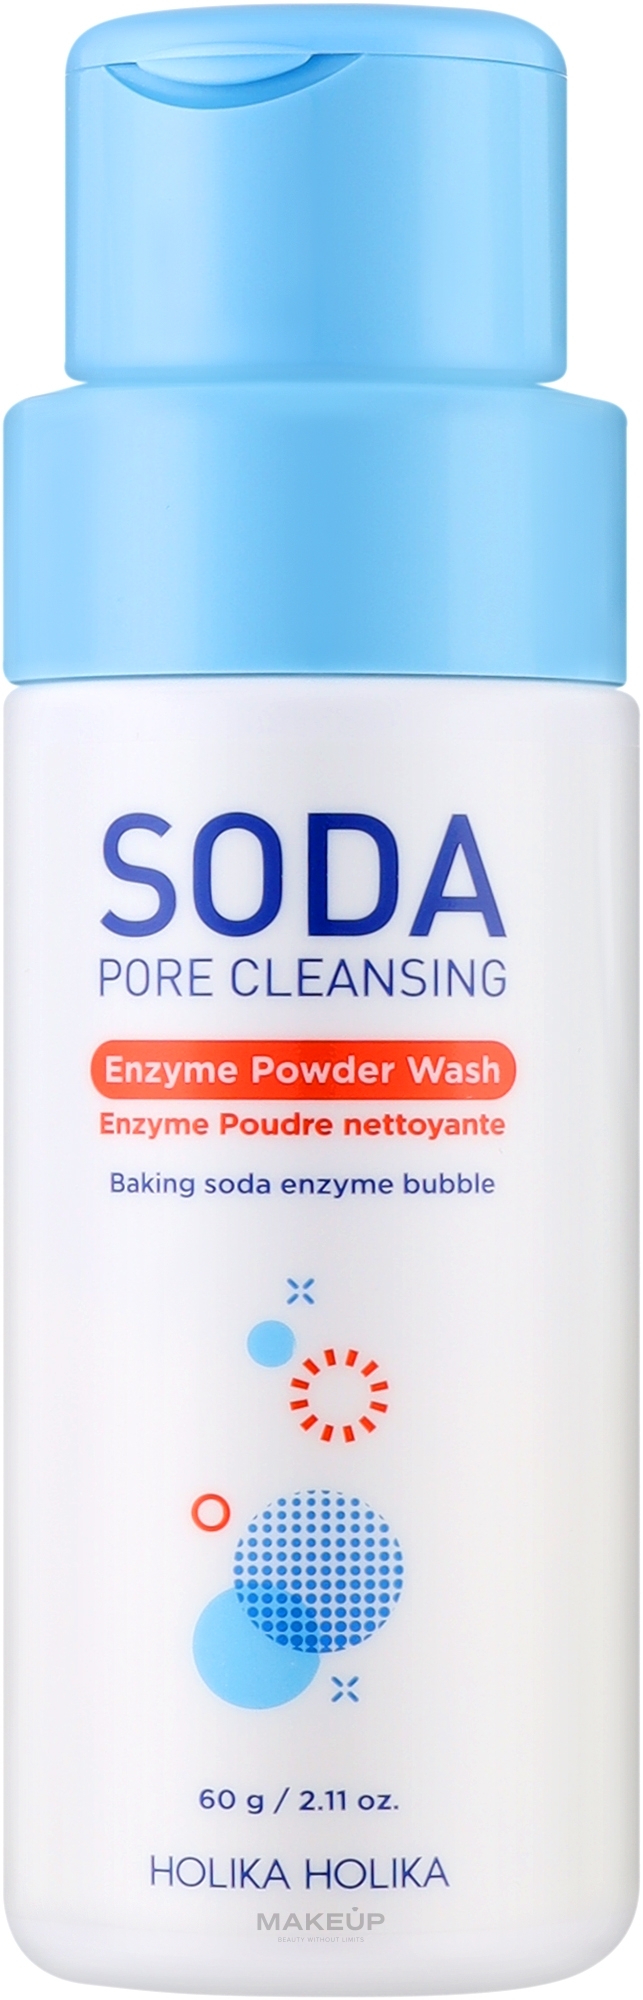 Cleansing Enzyme Powder - Holika Holika Soda Pore Cleansing Enzyme Powder Wash — photo 60 g